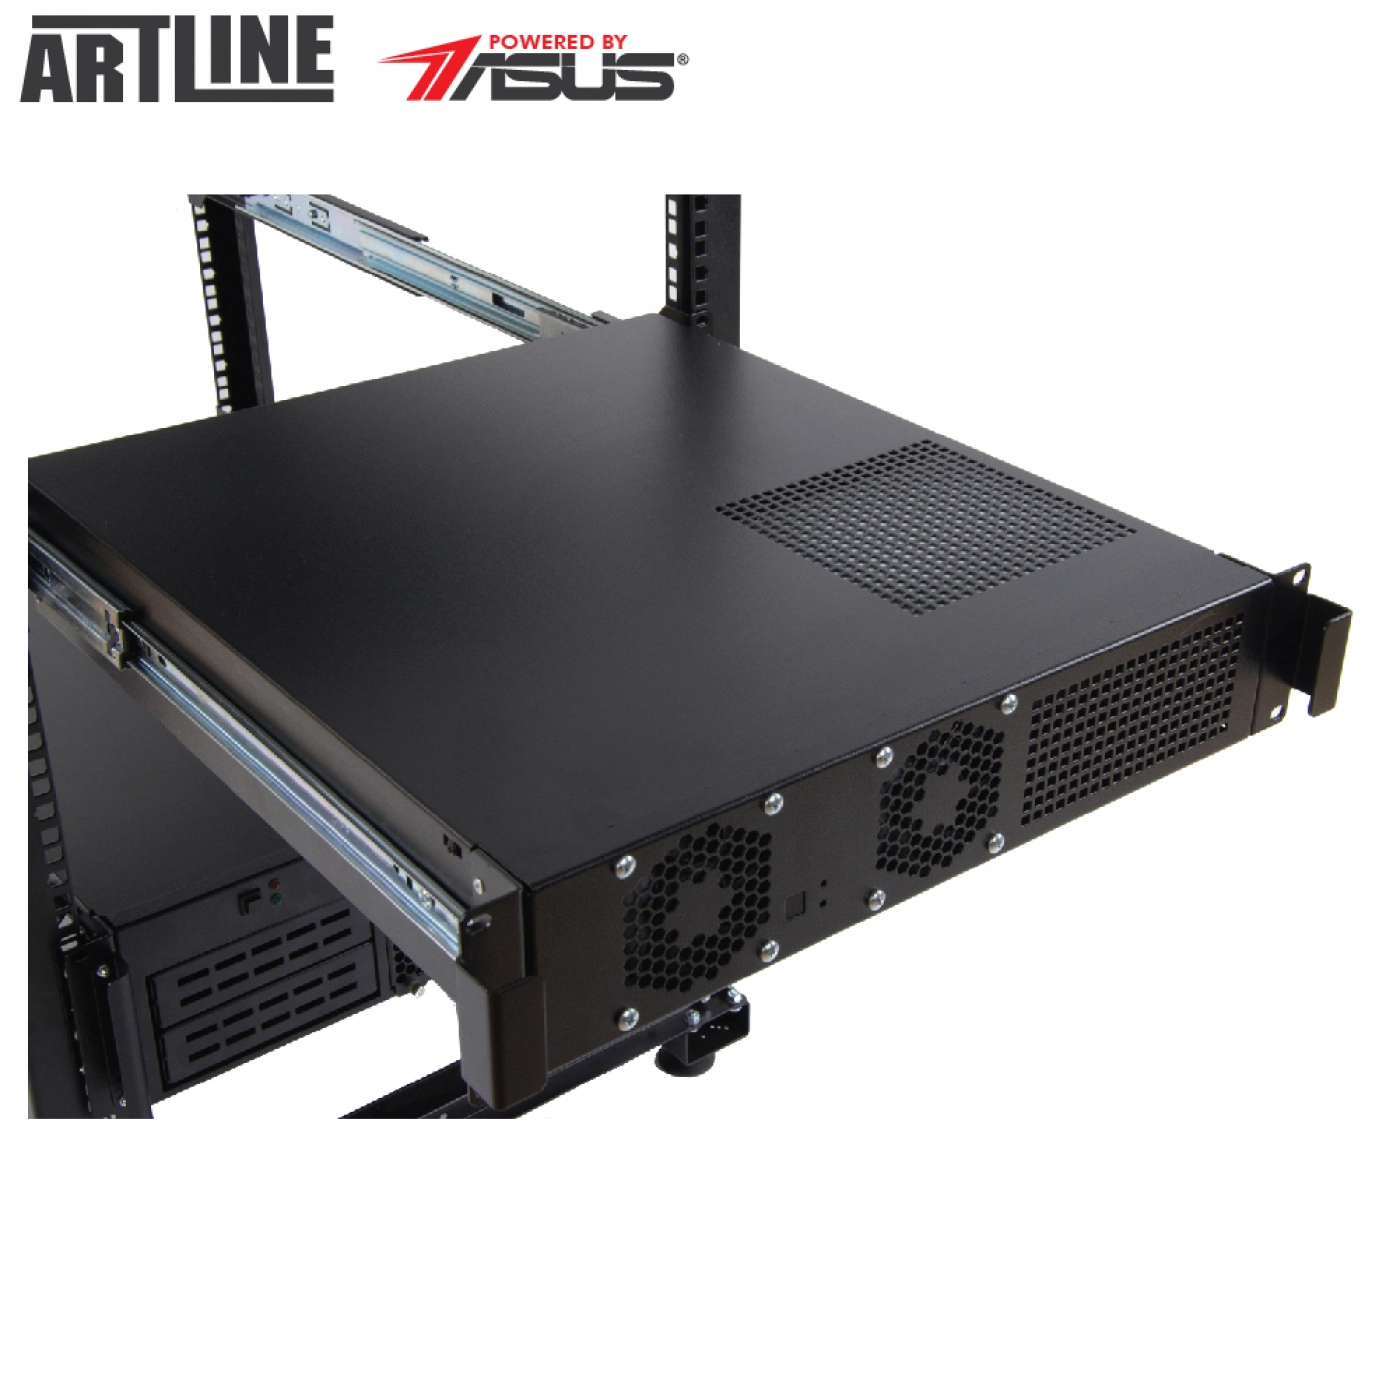 Купить Сервер ARTLINE Business R22v02 - фото 5